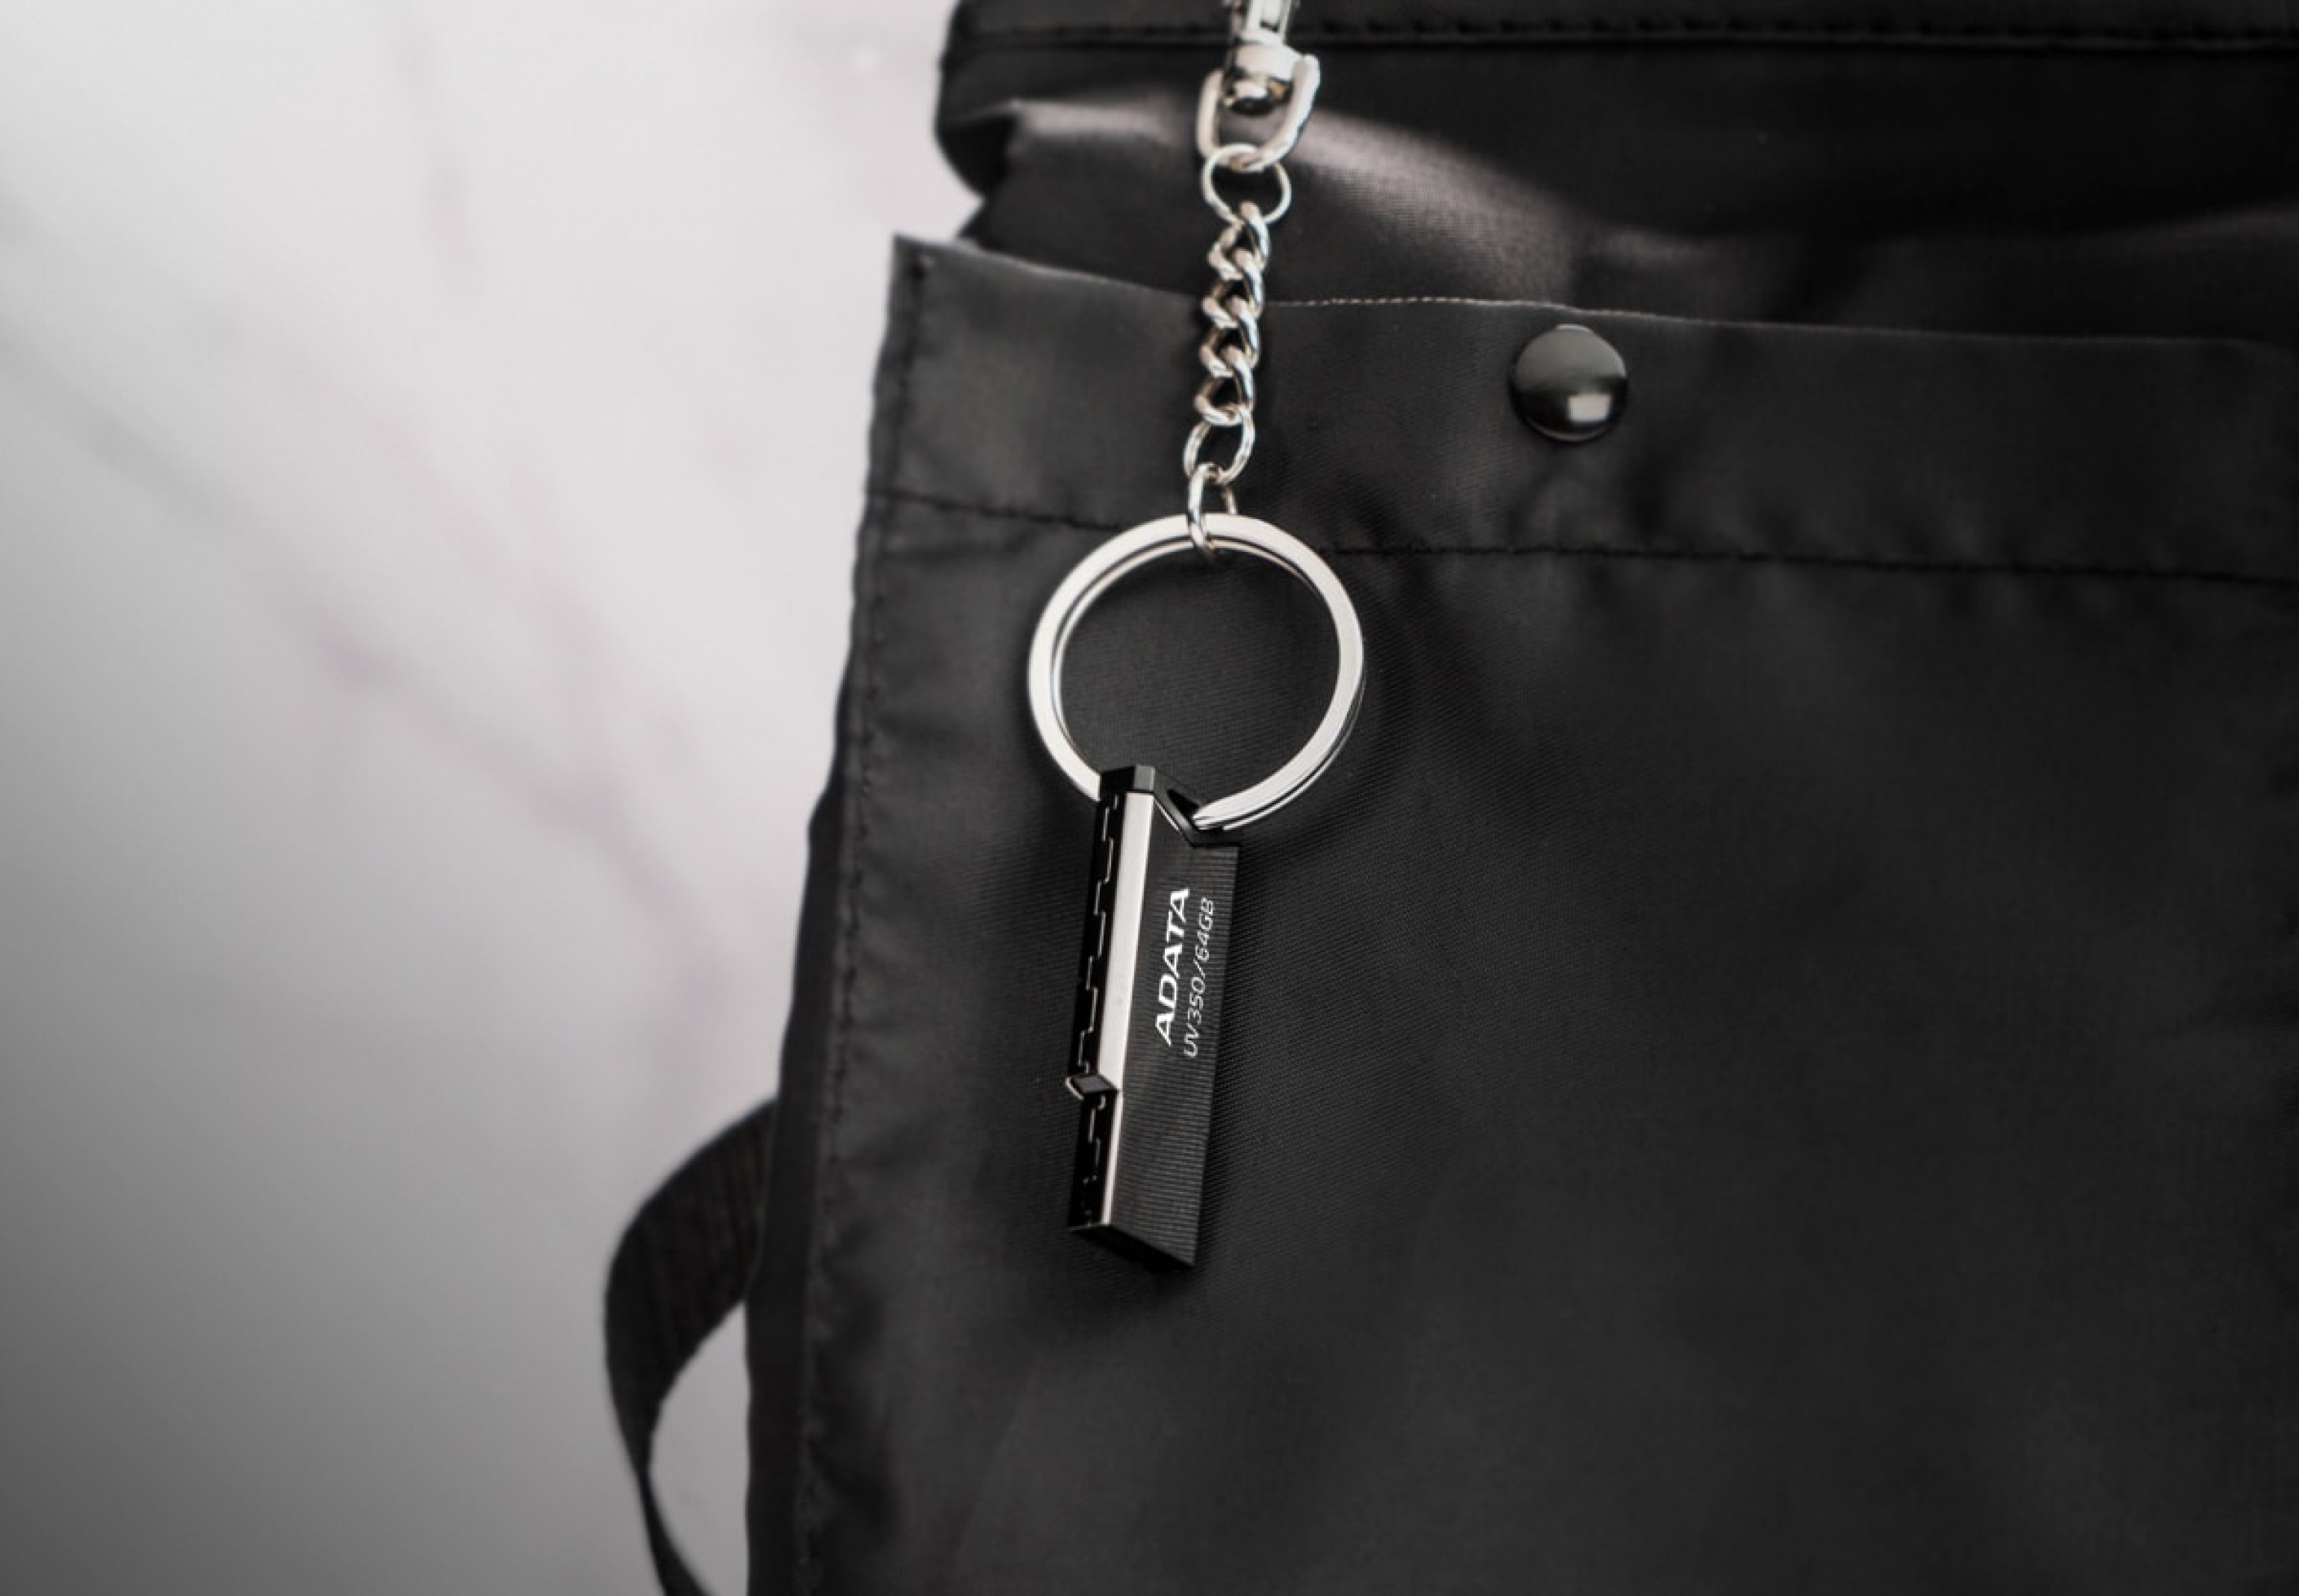 Flashdisk Adata UV350 má otvor pre pútko na zavesenie na kľúče či na cestovný batoh!